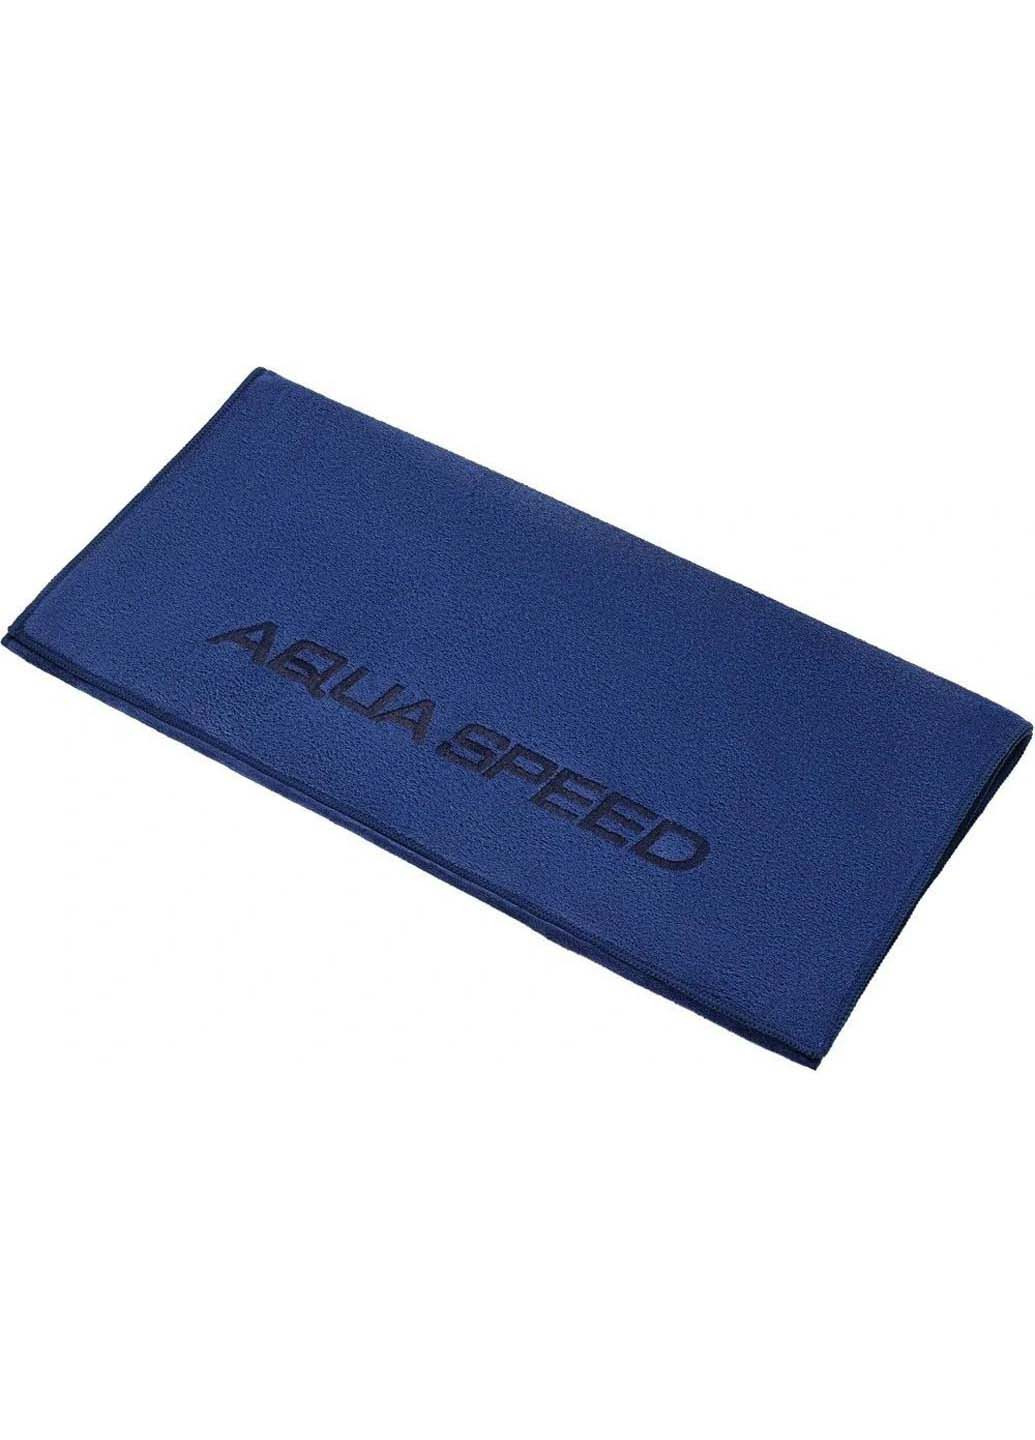 Aqua Speed полотенце синий производство - Китай